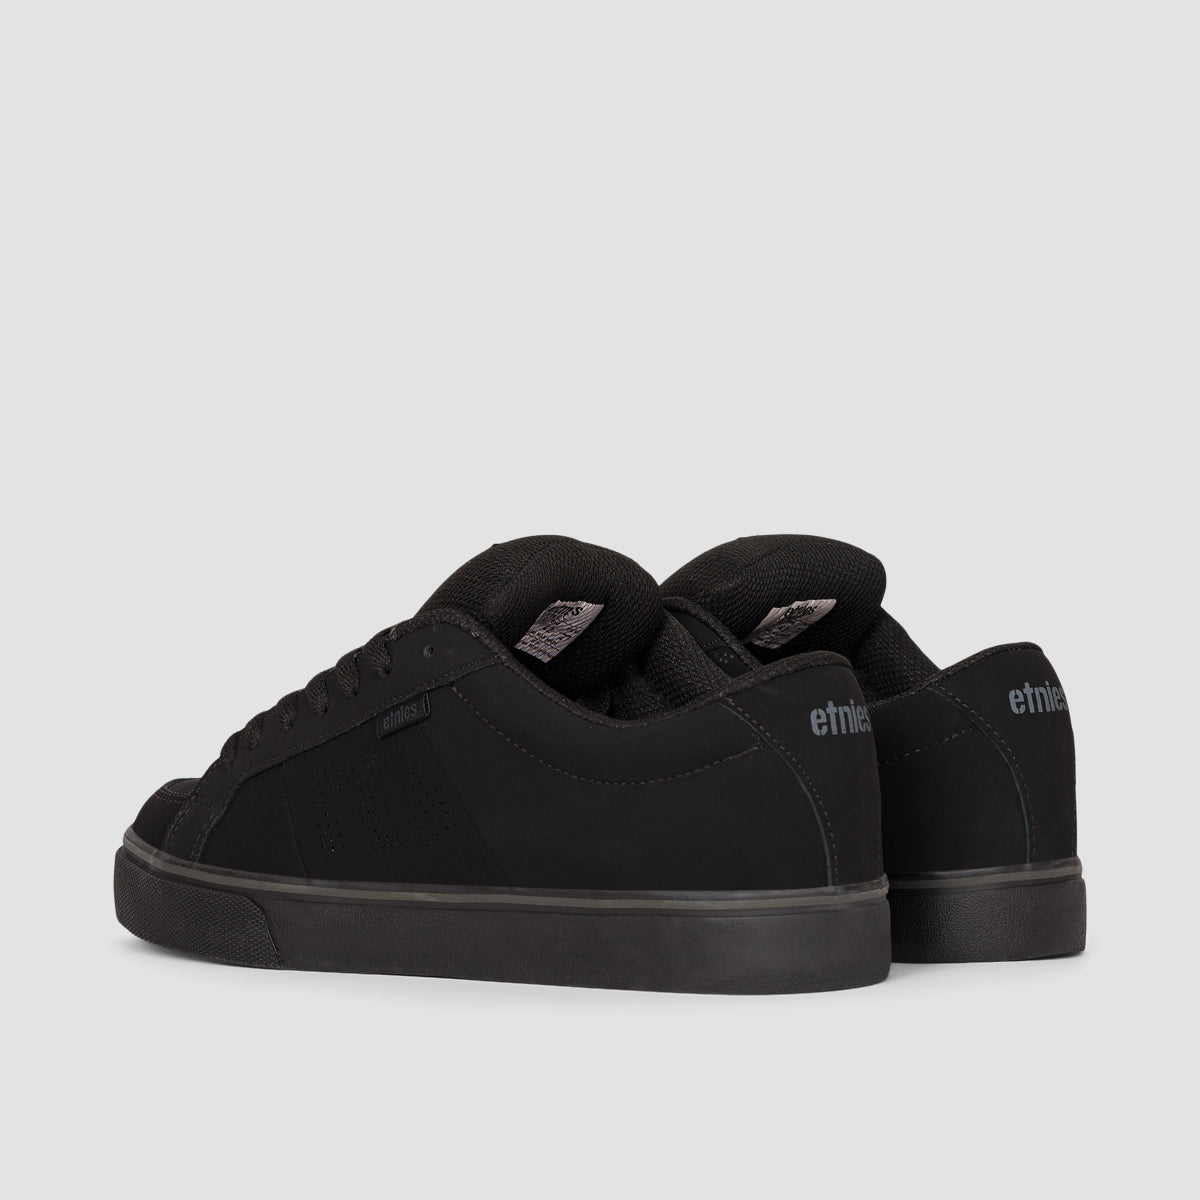 Etnies Kingpin Vulc Shoes - Black/Black